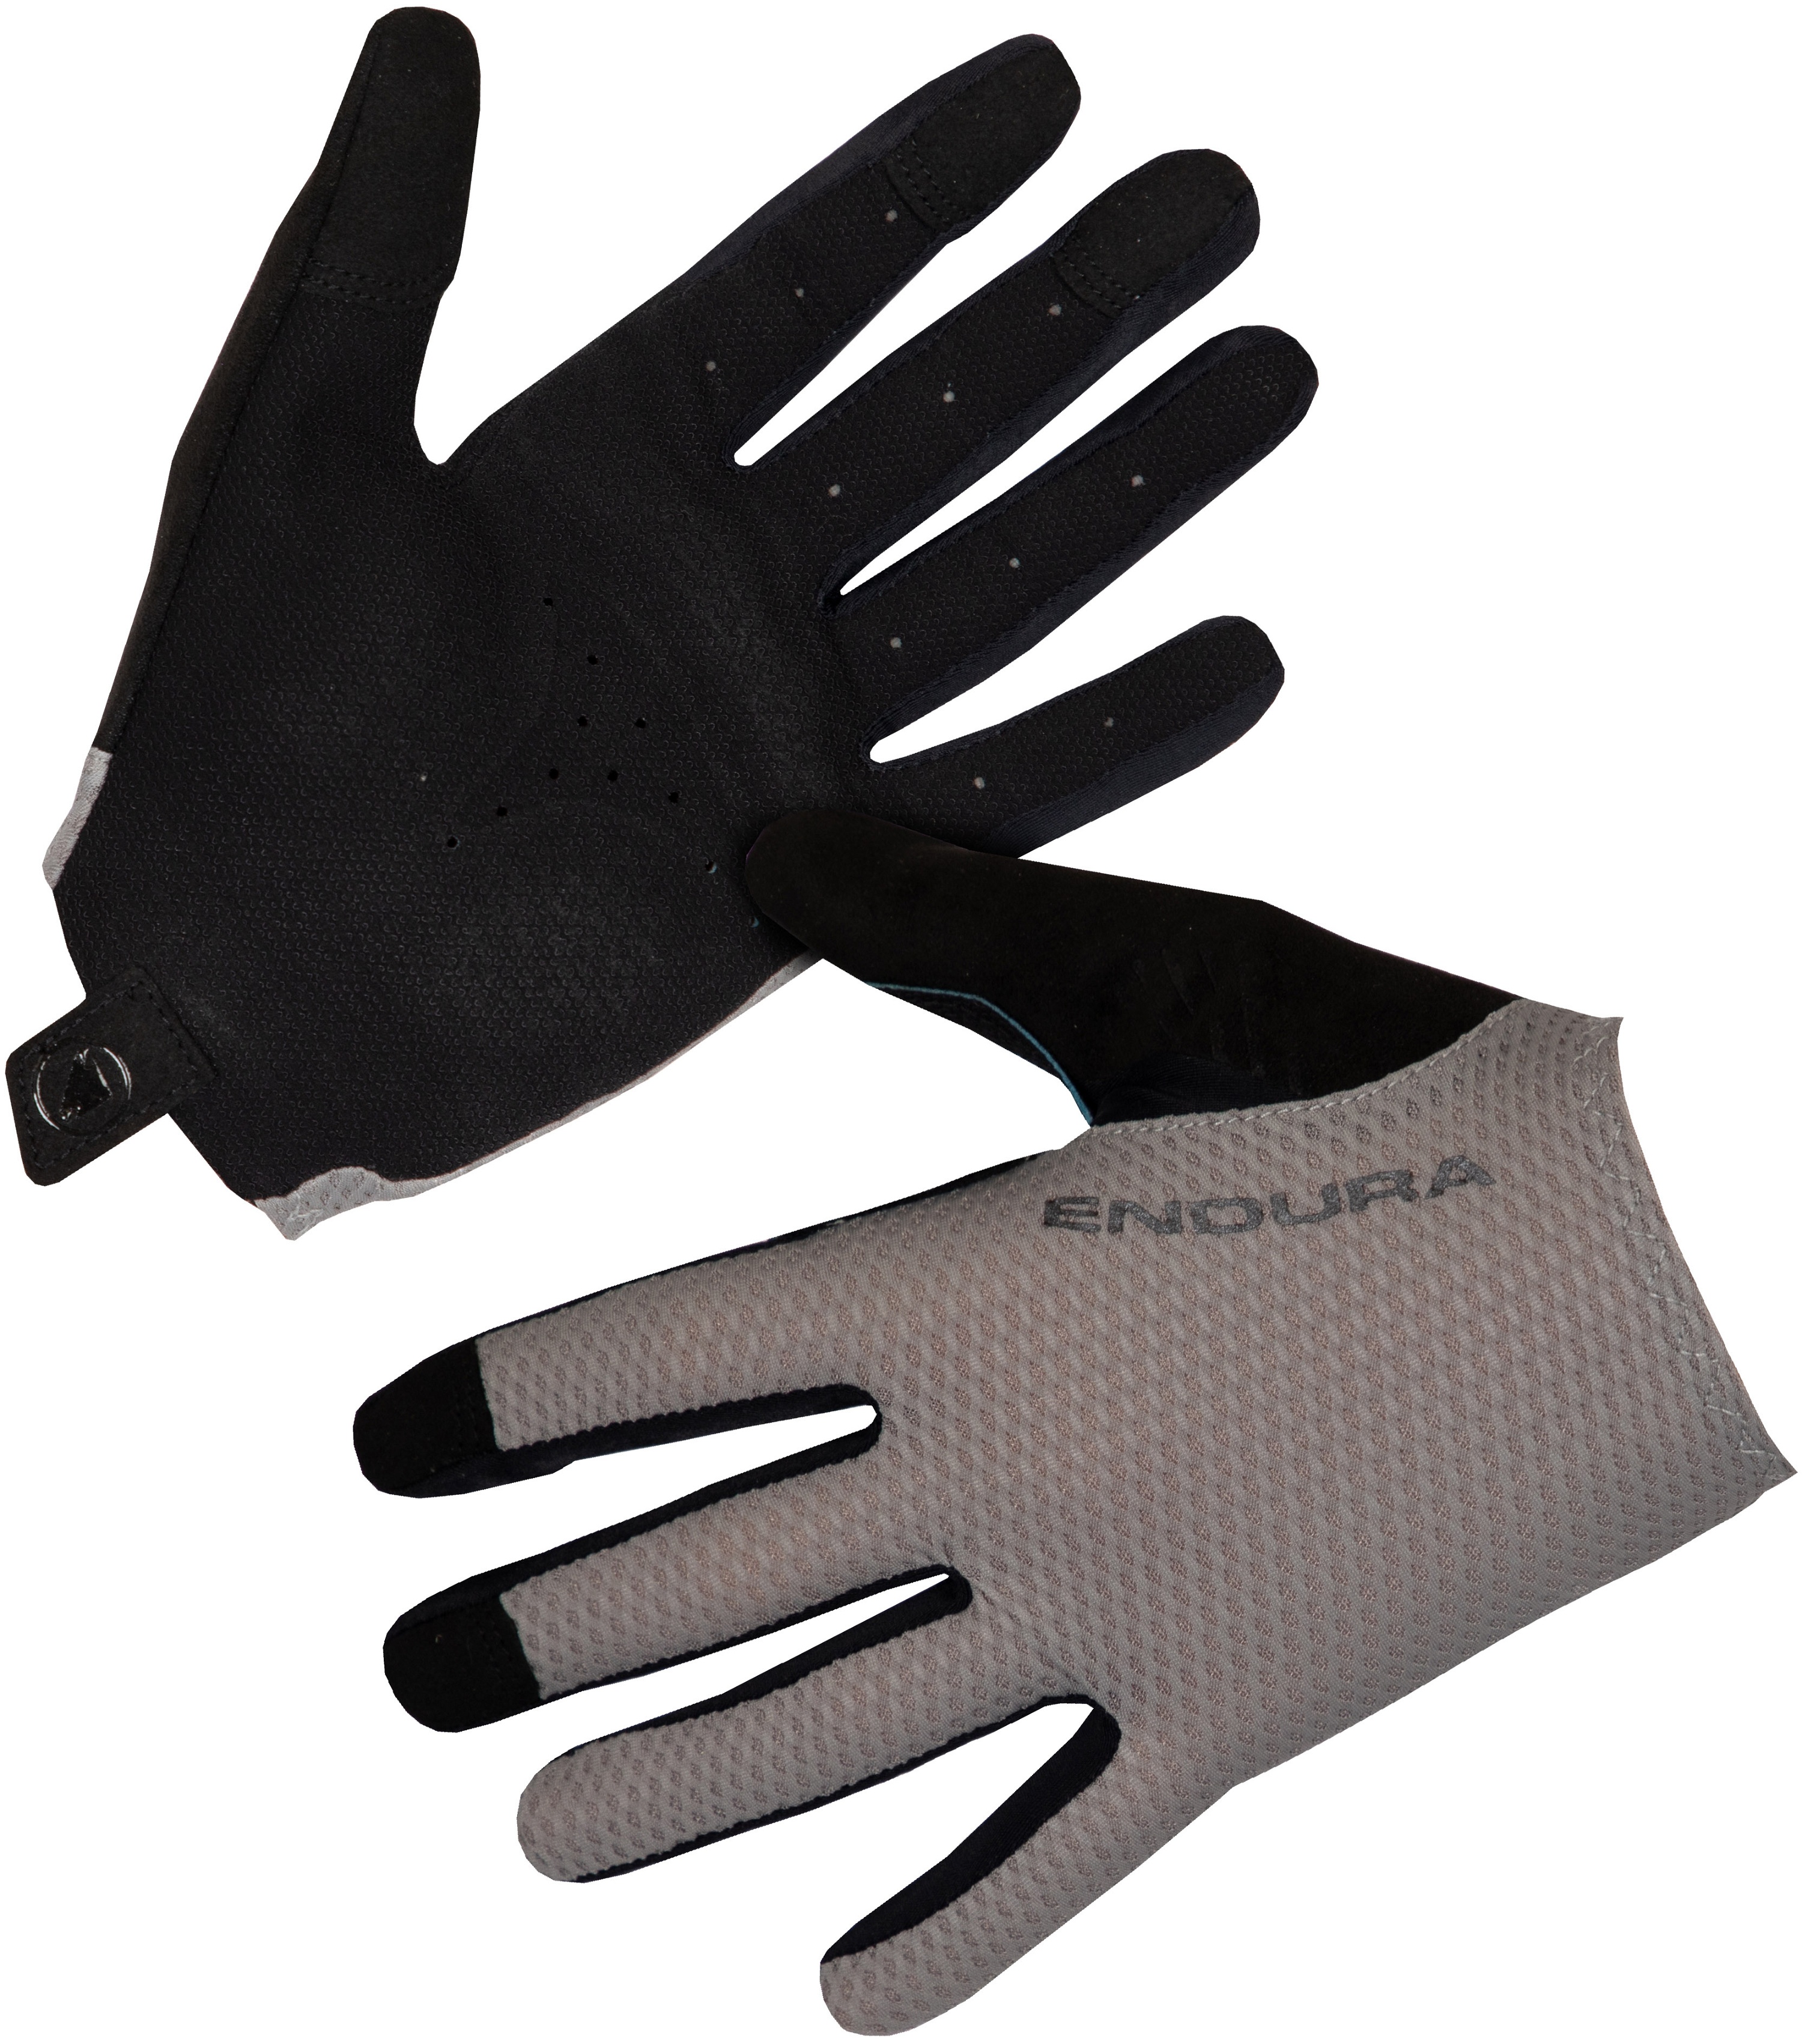  - Endura EGM Konfort Full Finger Glove - Fossil